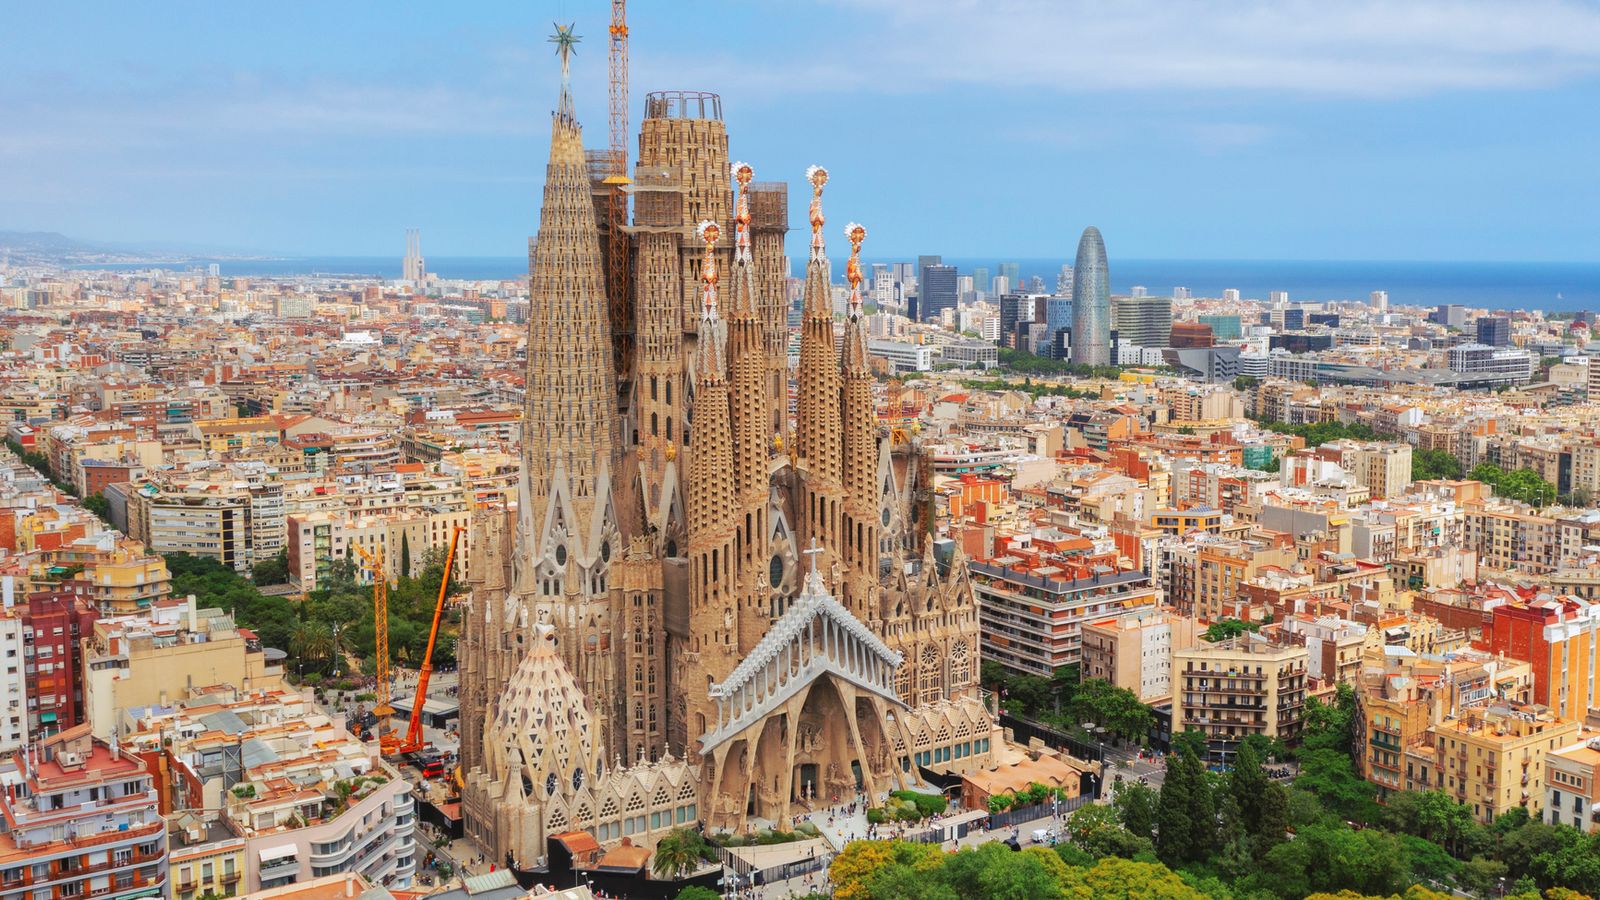 Според фондация La Sagrada Familia, организацията, натоварена с изграждането и